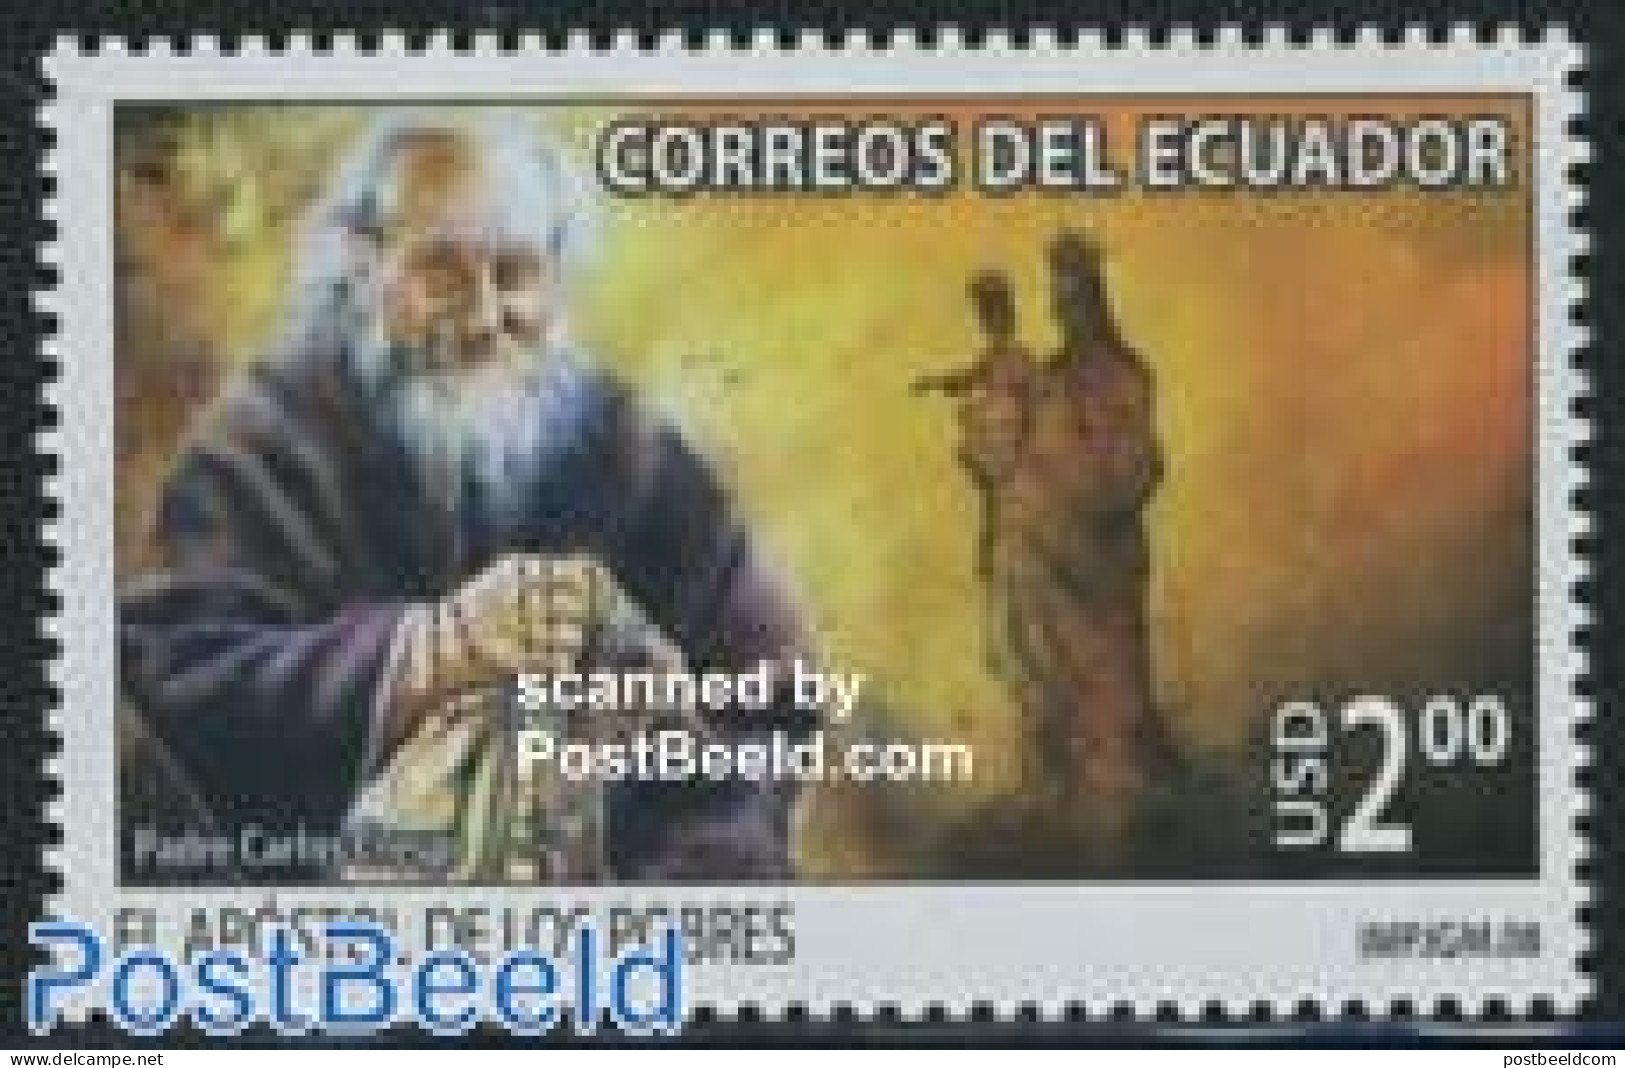 Ecuador 2008 Father Crespo 1v, Mint NH, Religion - Religion - Ecuador